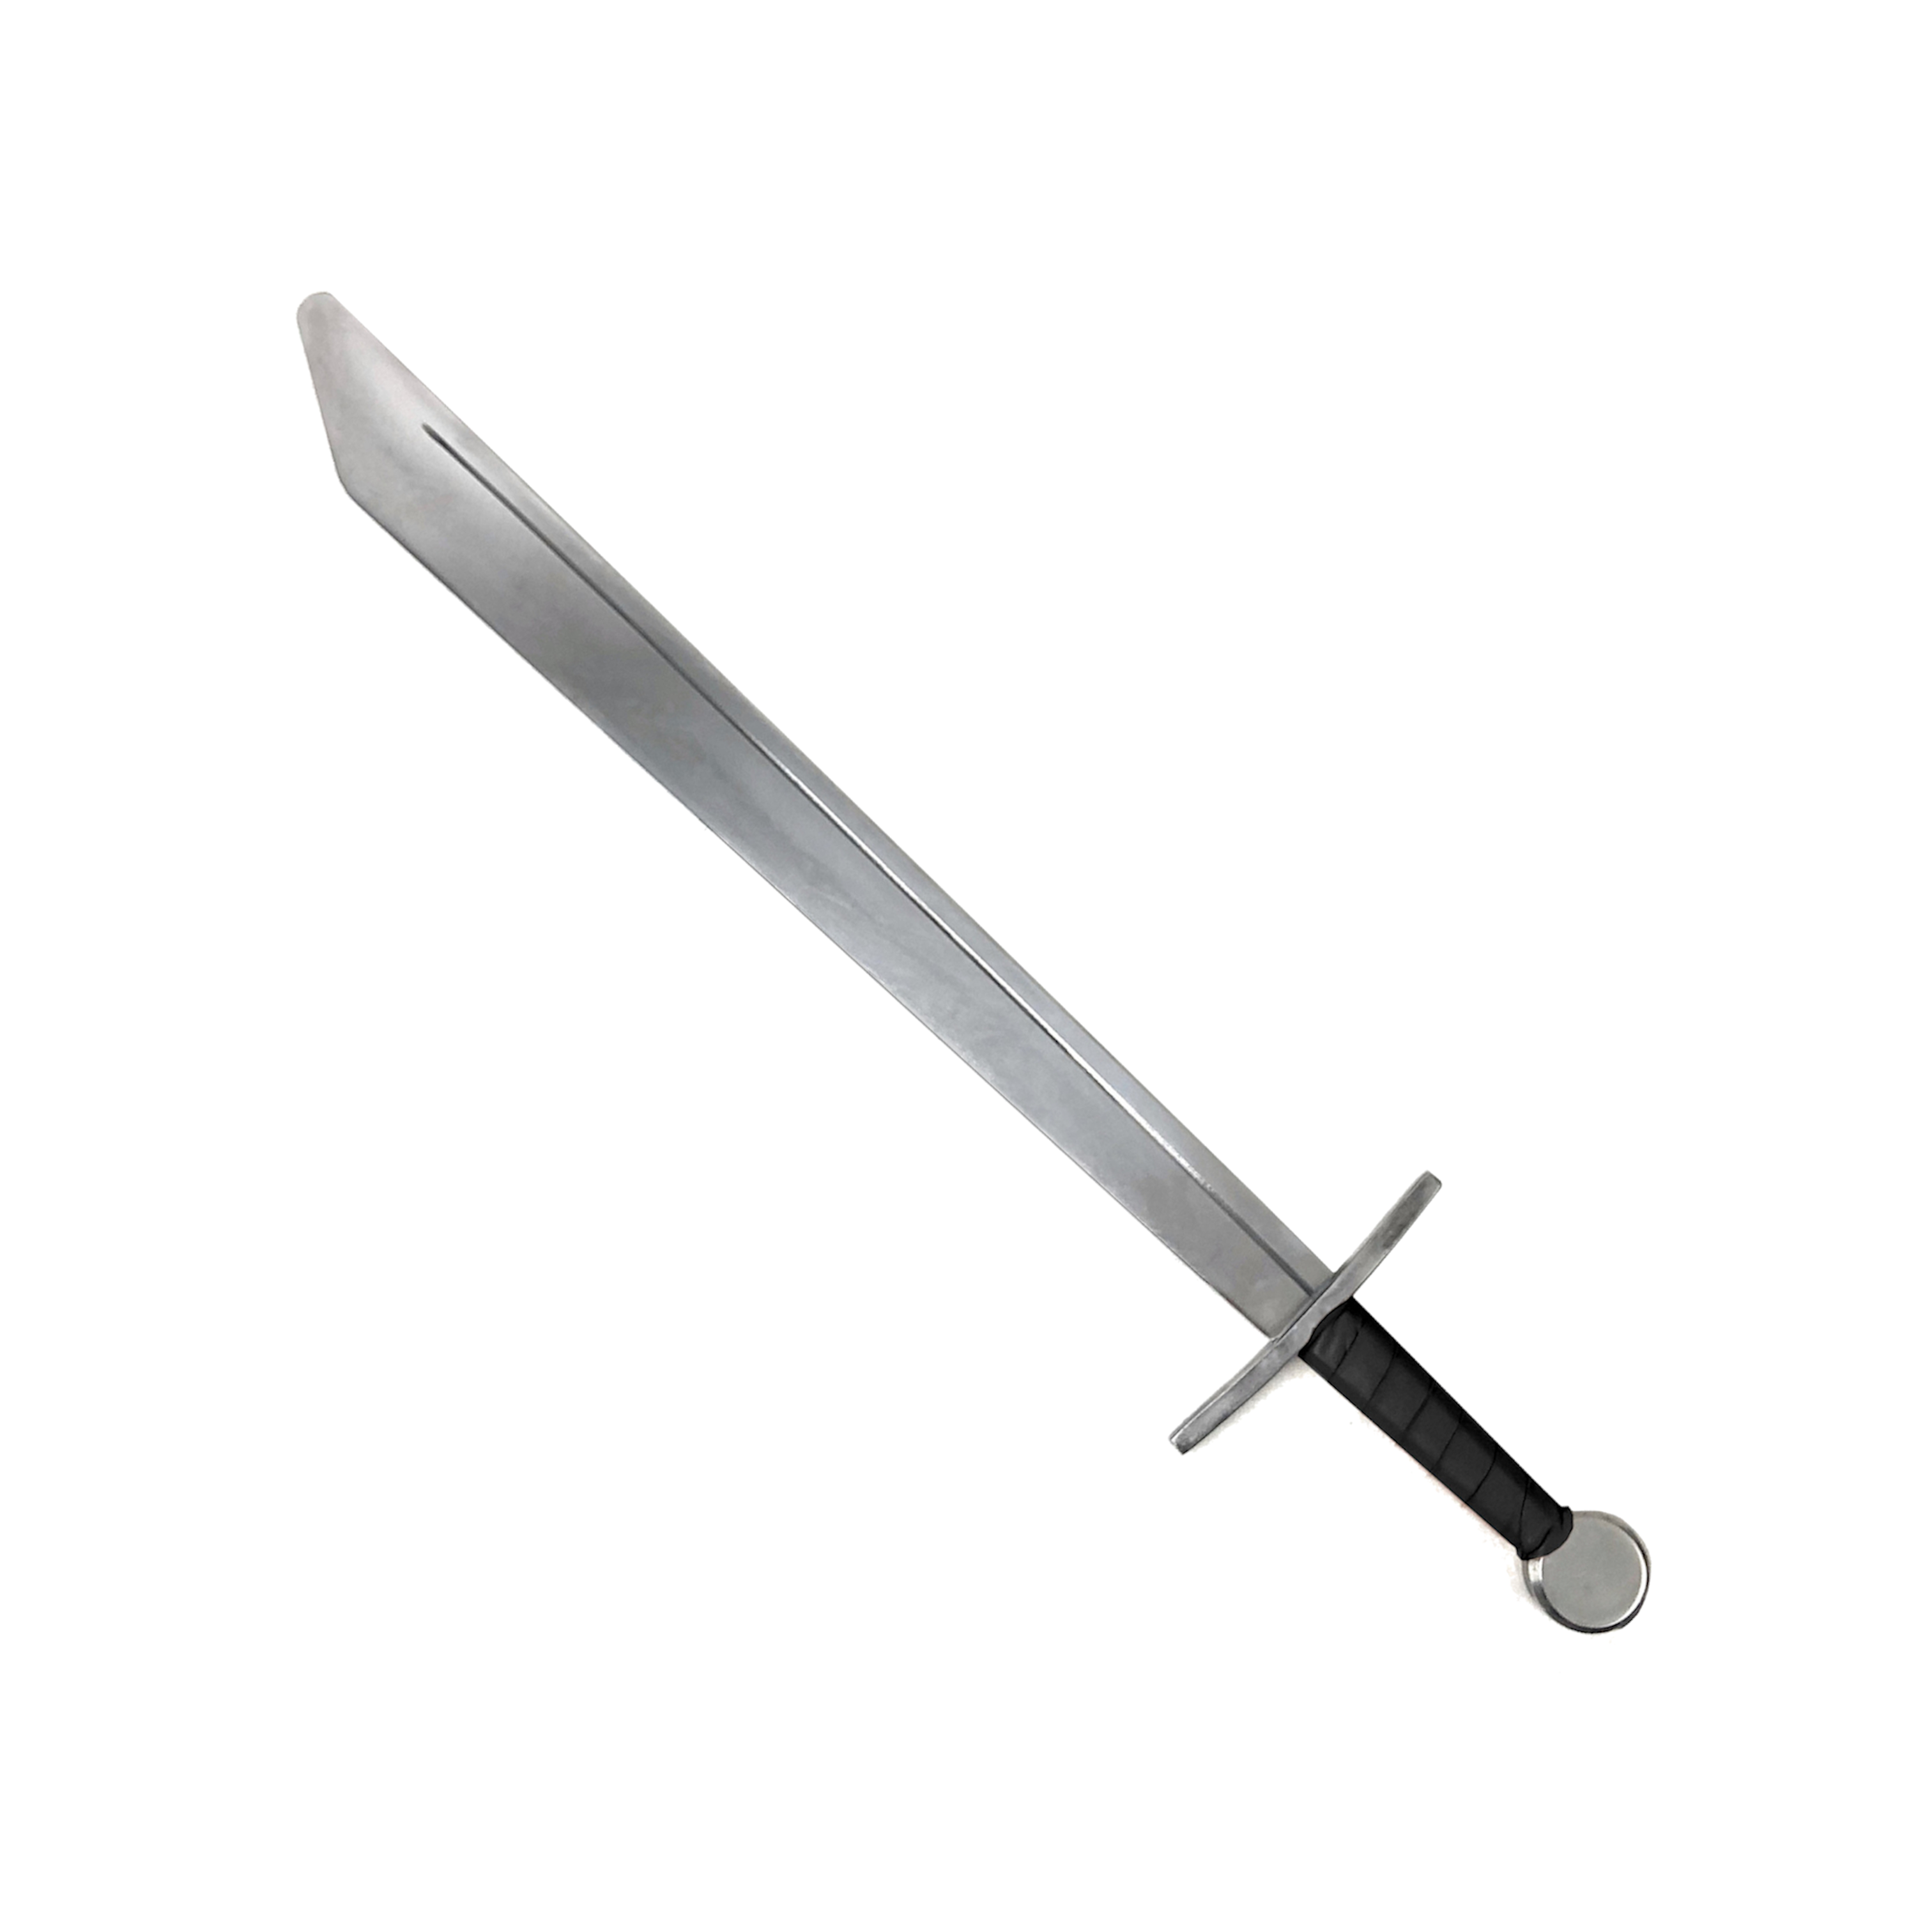 古代枪矛槊到底怎么区分看枪杆软硬矛尖大小有无红缨就全错了